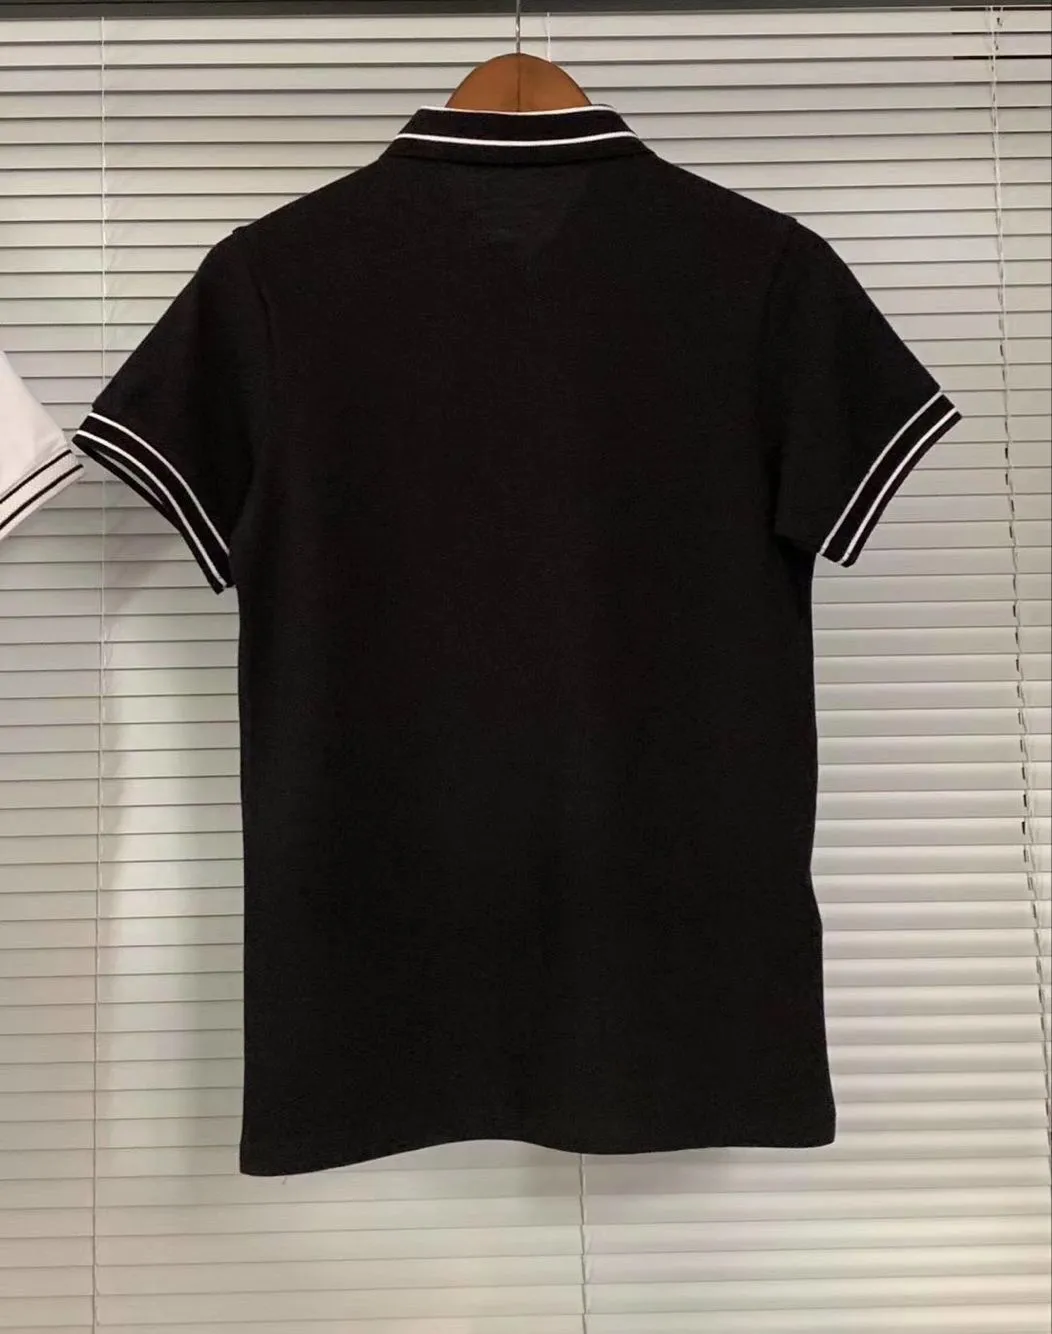 Европейские мужчины Фред футболка 2020 летняя мода хлопок с коротким рукавом твердые Перри рубашки поло мужские повседневные топ тройники черный белый размер S-XXL